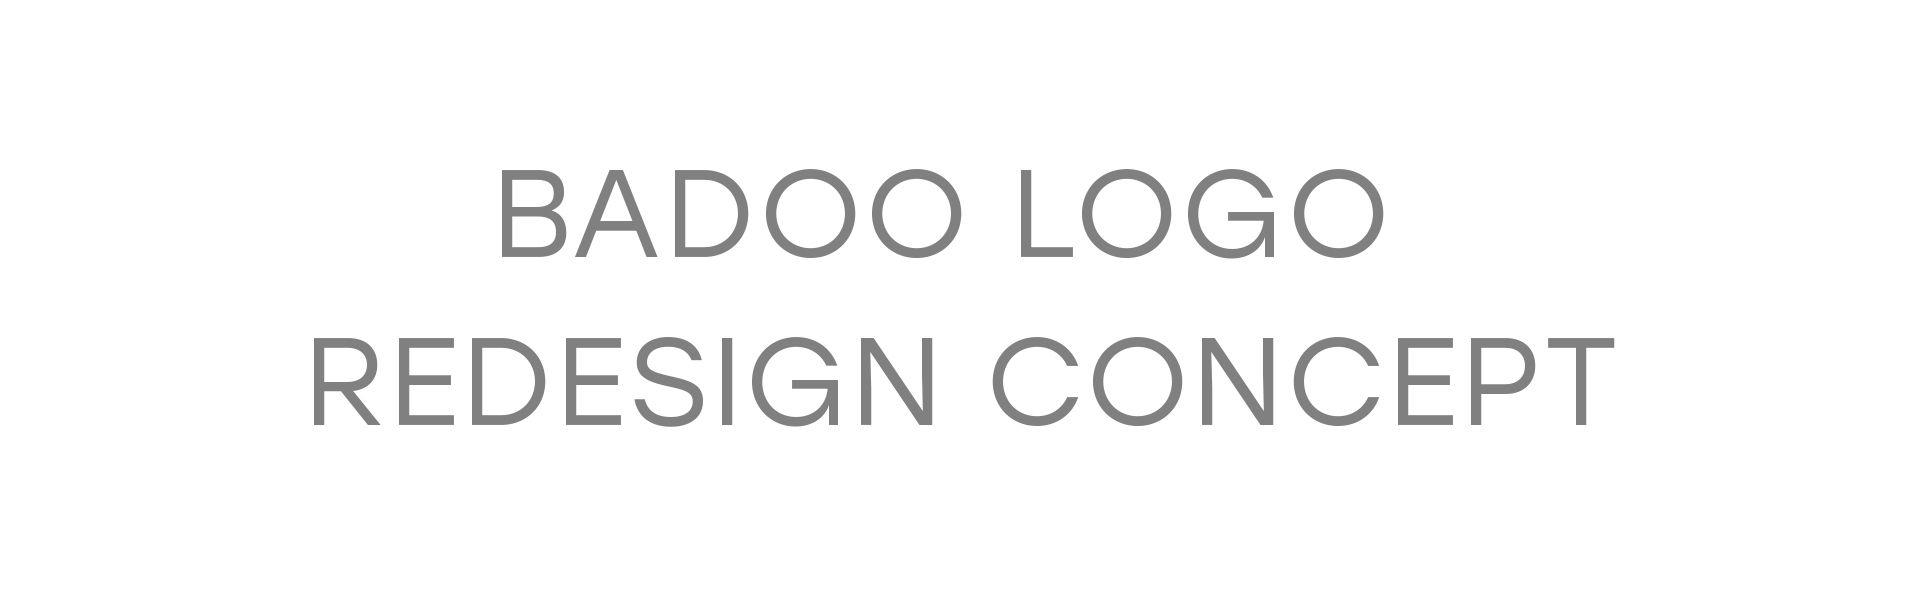 Badoo App Logo - Badoo Logo Redesign Concept on Behance